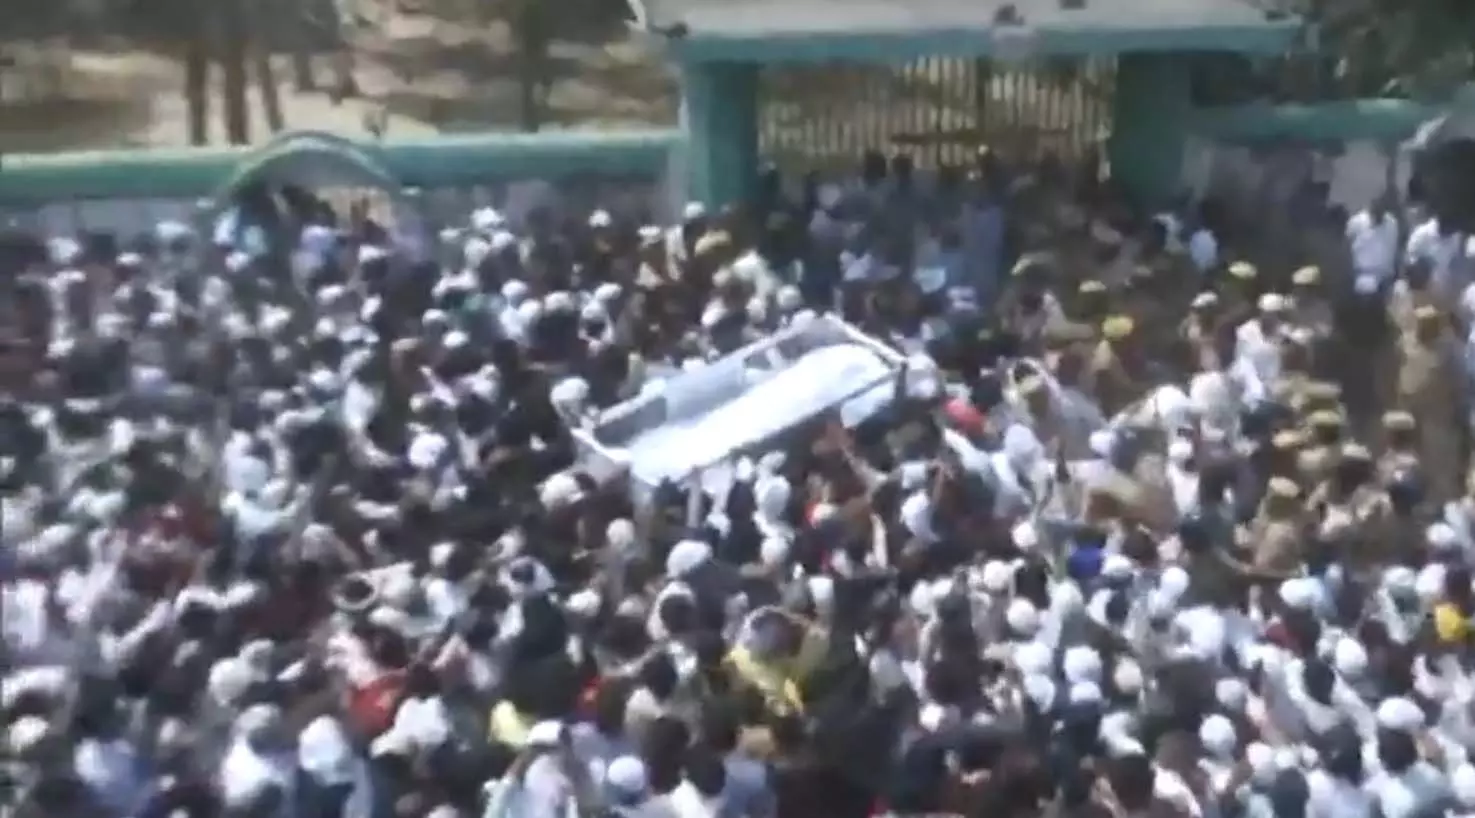 सुपुर्द-ए-खाक किया गया मुख्तार अंसारी, कब्रिस्‍तान के बाहर भारी भीड़, पुलिस के साथ पैरा मिलिट्री के जवान तैनात